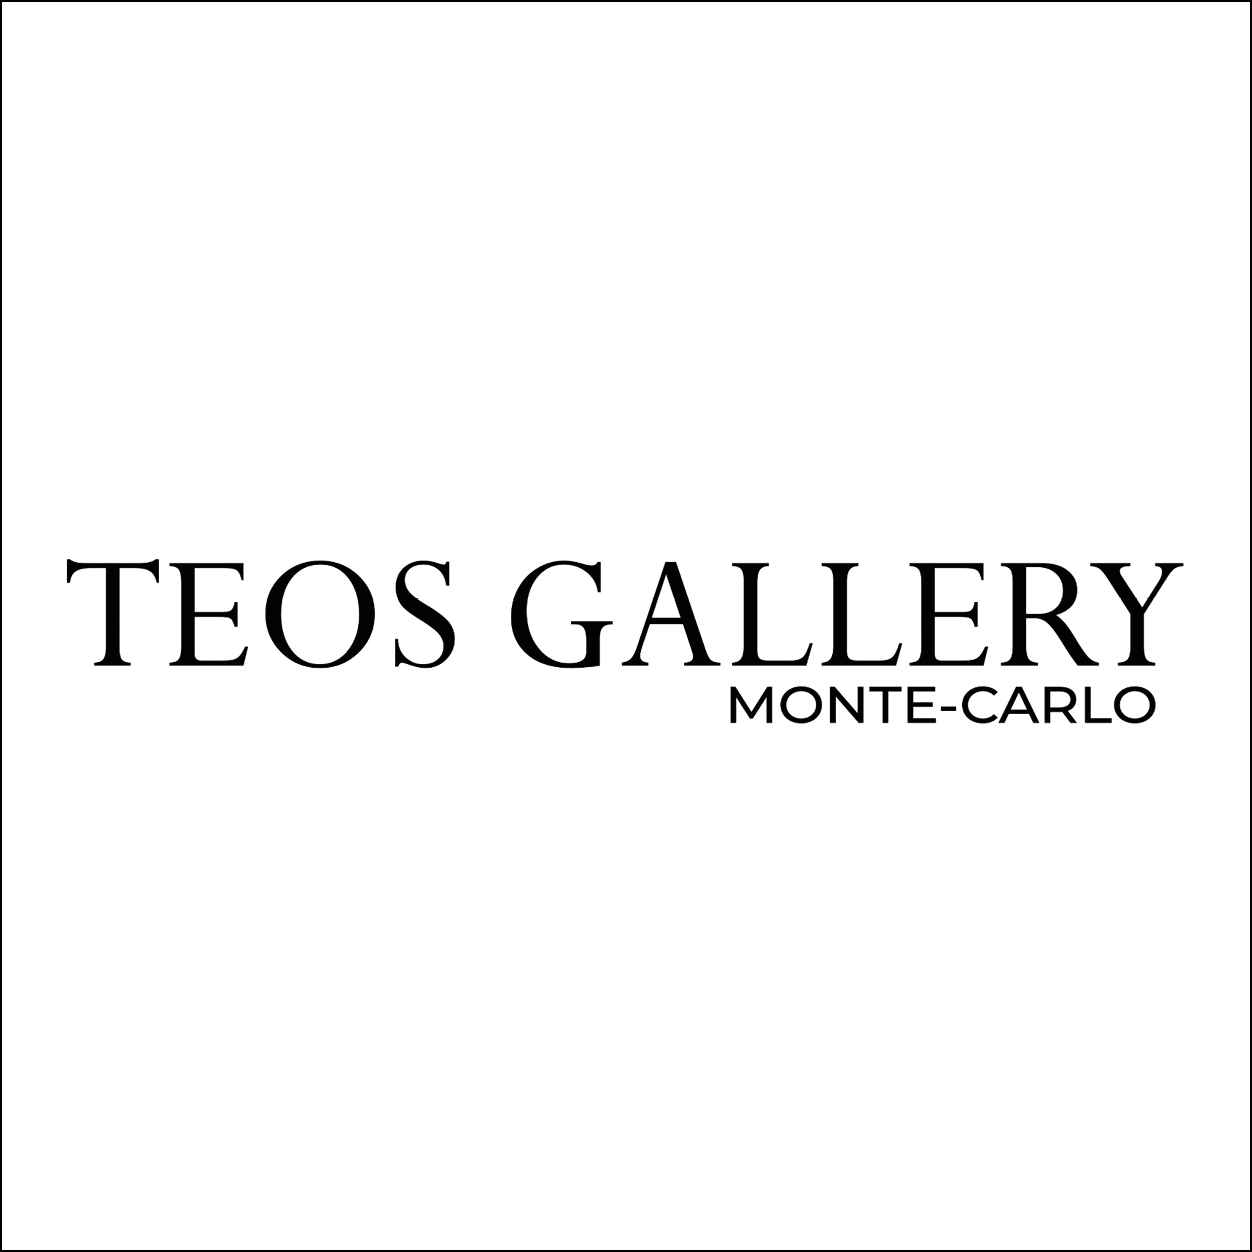 Teos Gallery